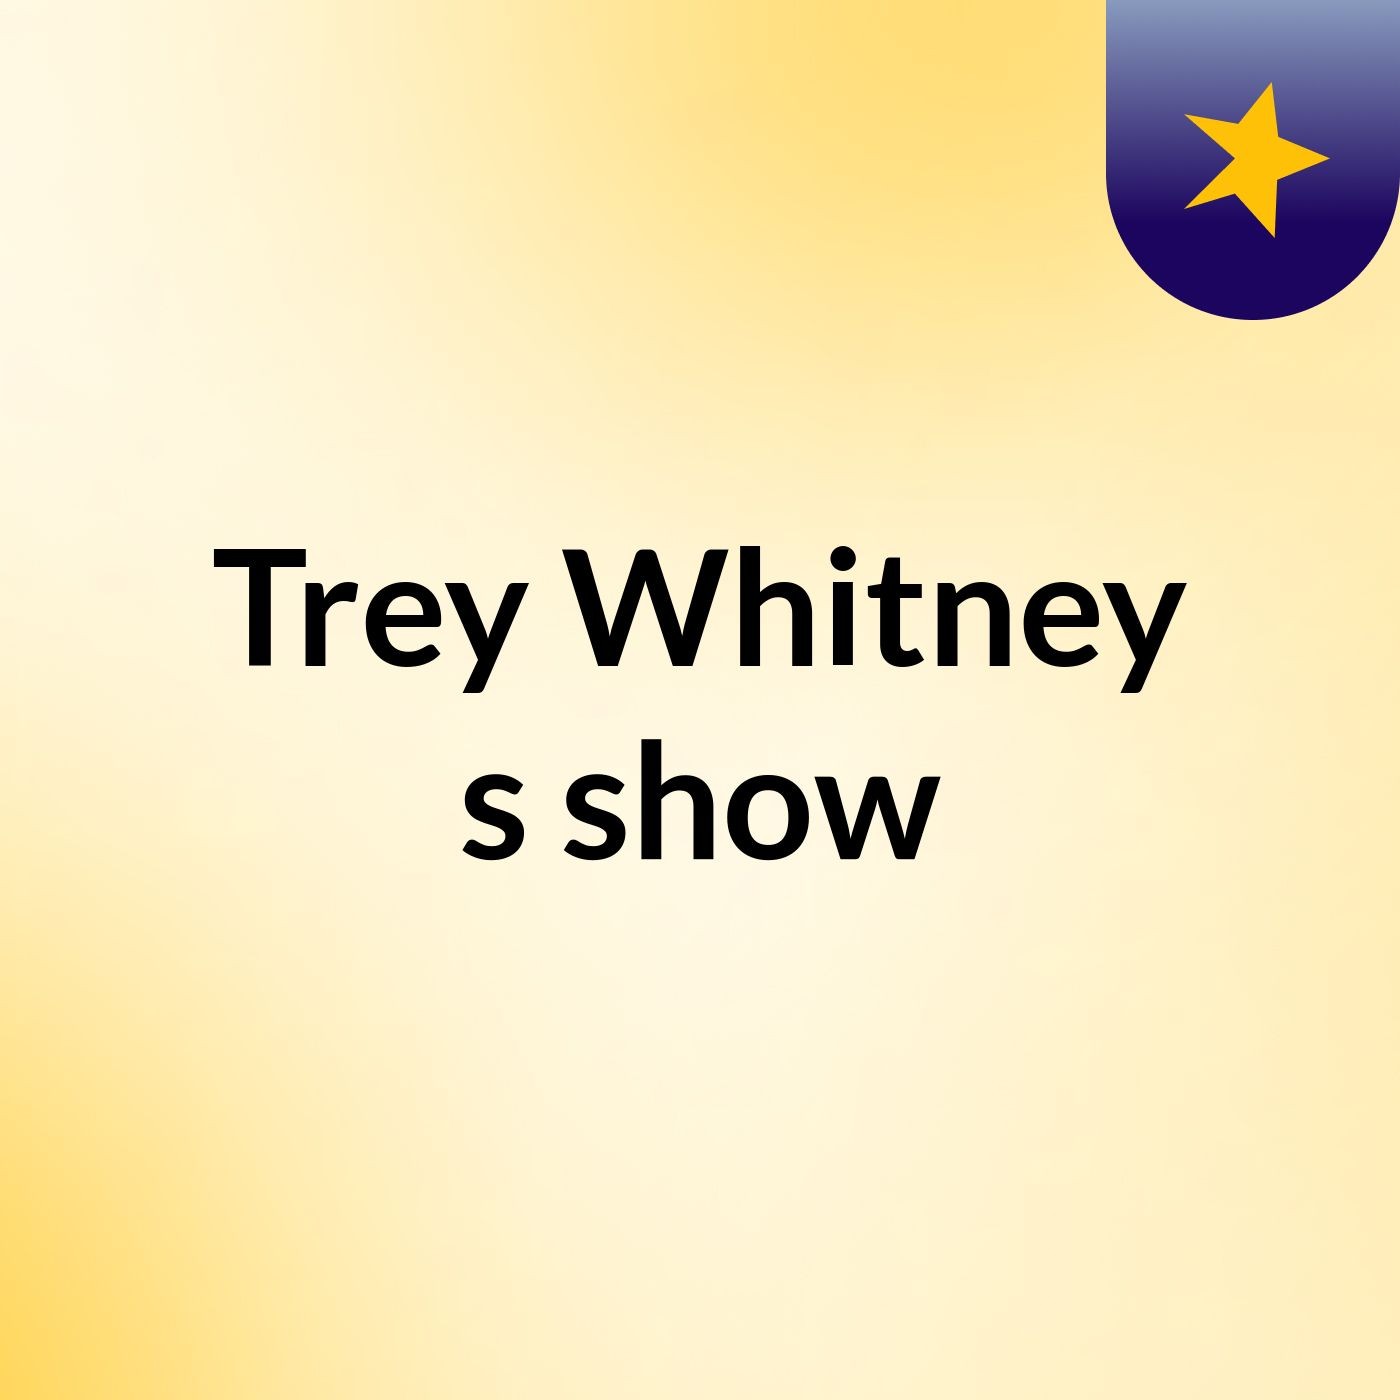 Trey Whitney's show